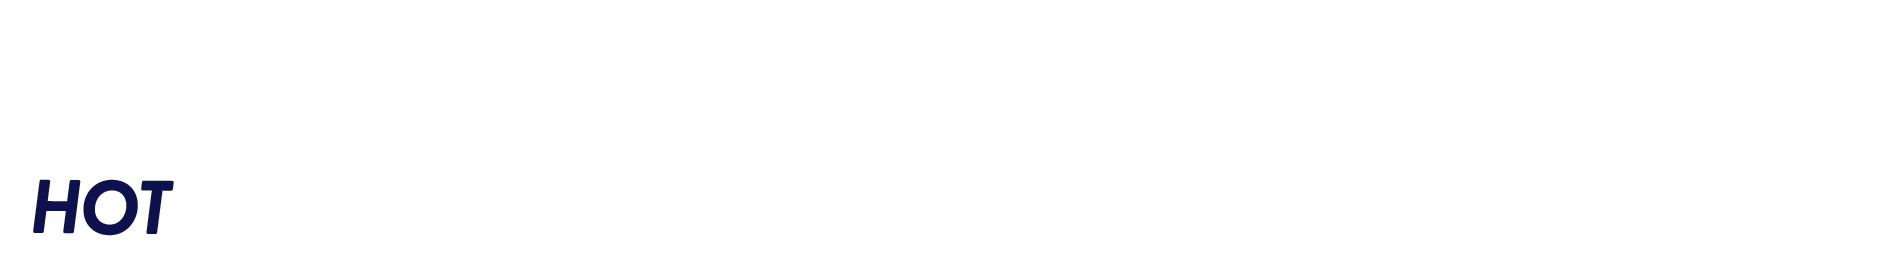 HOT新聞55号ロゴ